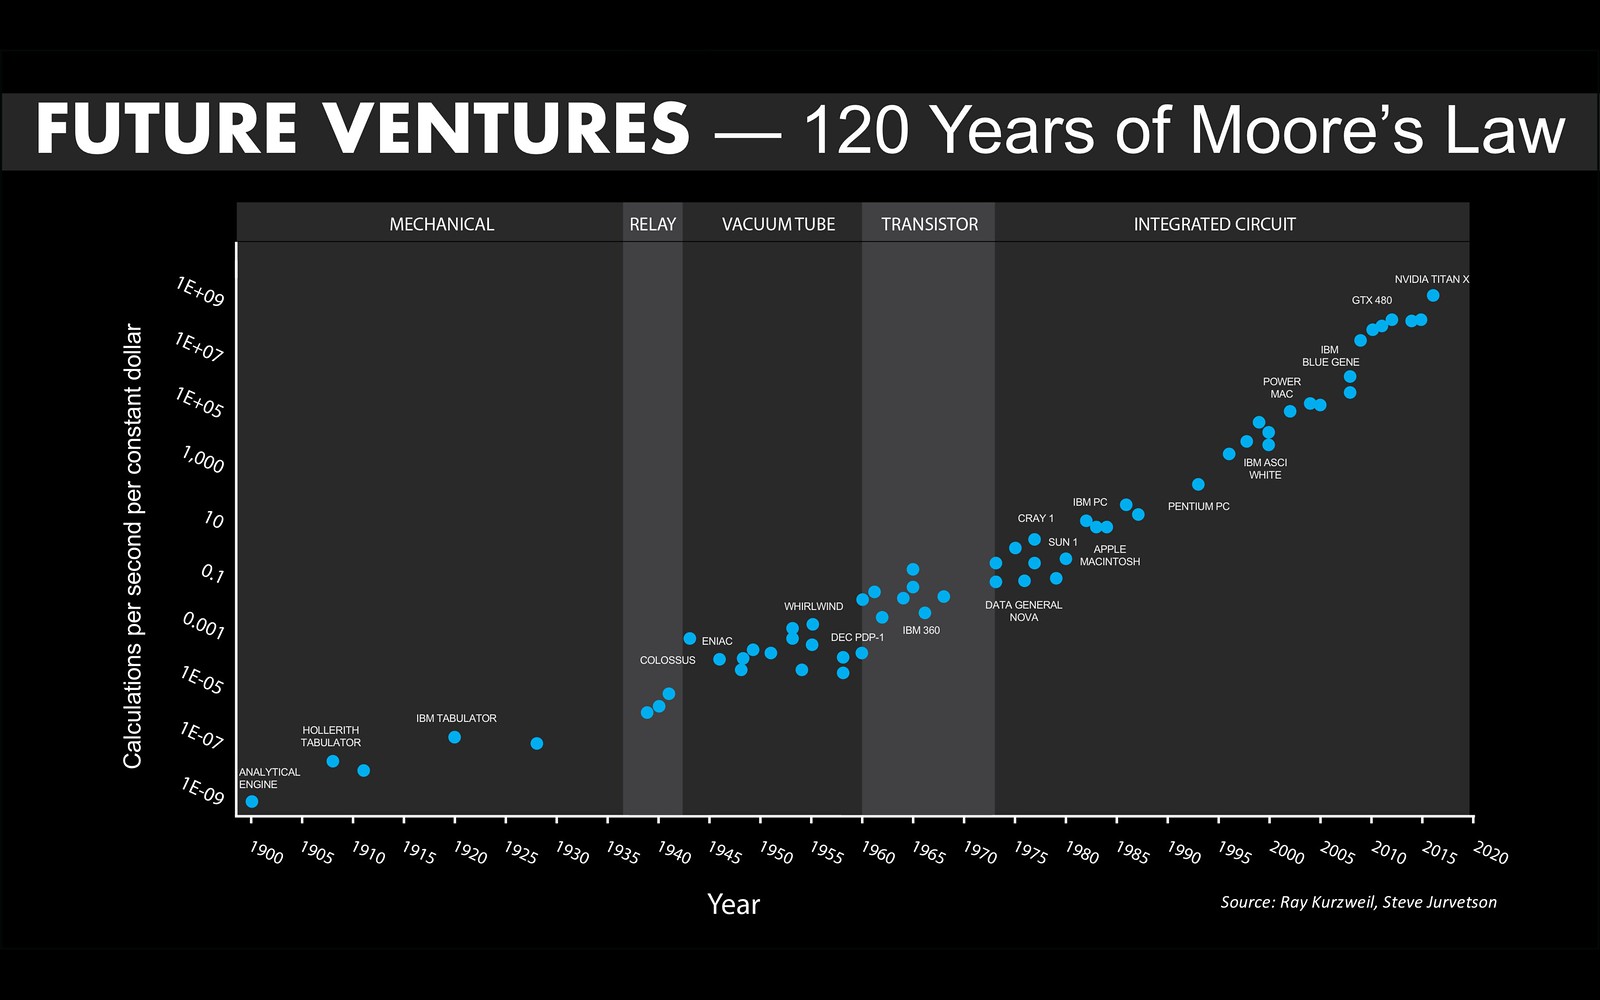 Une version mise à jour de la loi de Moore sur 120 ans (basée sur le graphique de Kurzweil). Les 7 points de données les plus récents sont tous des GPU NVIDIA.